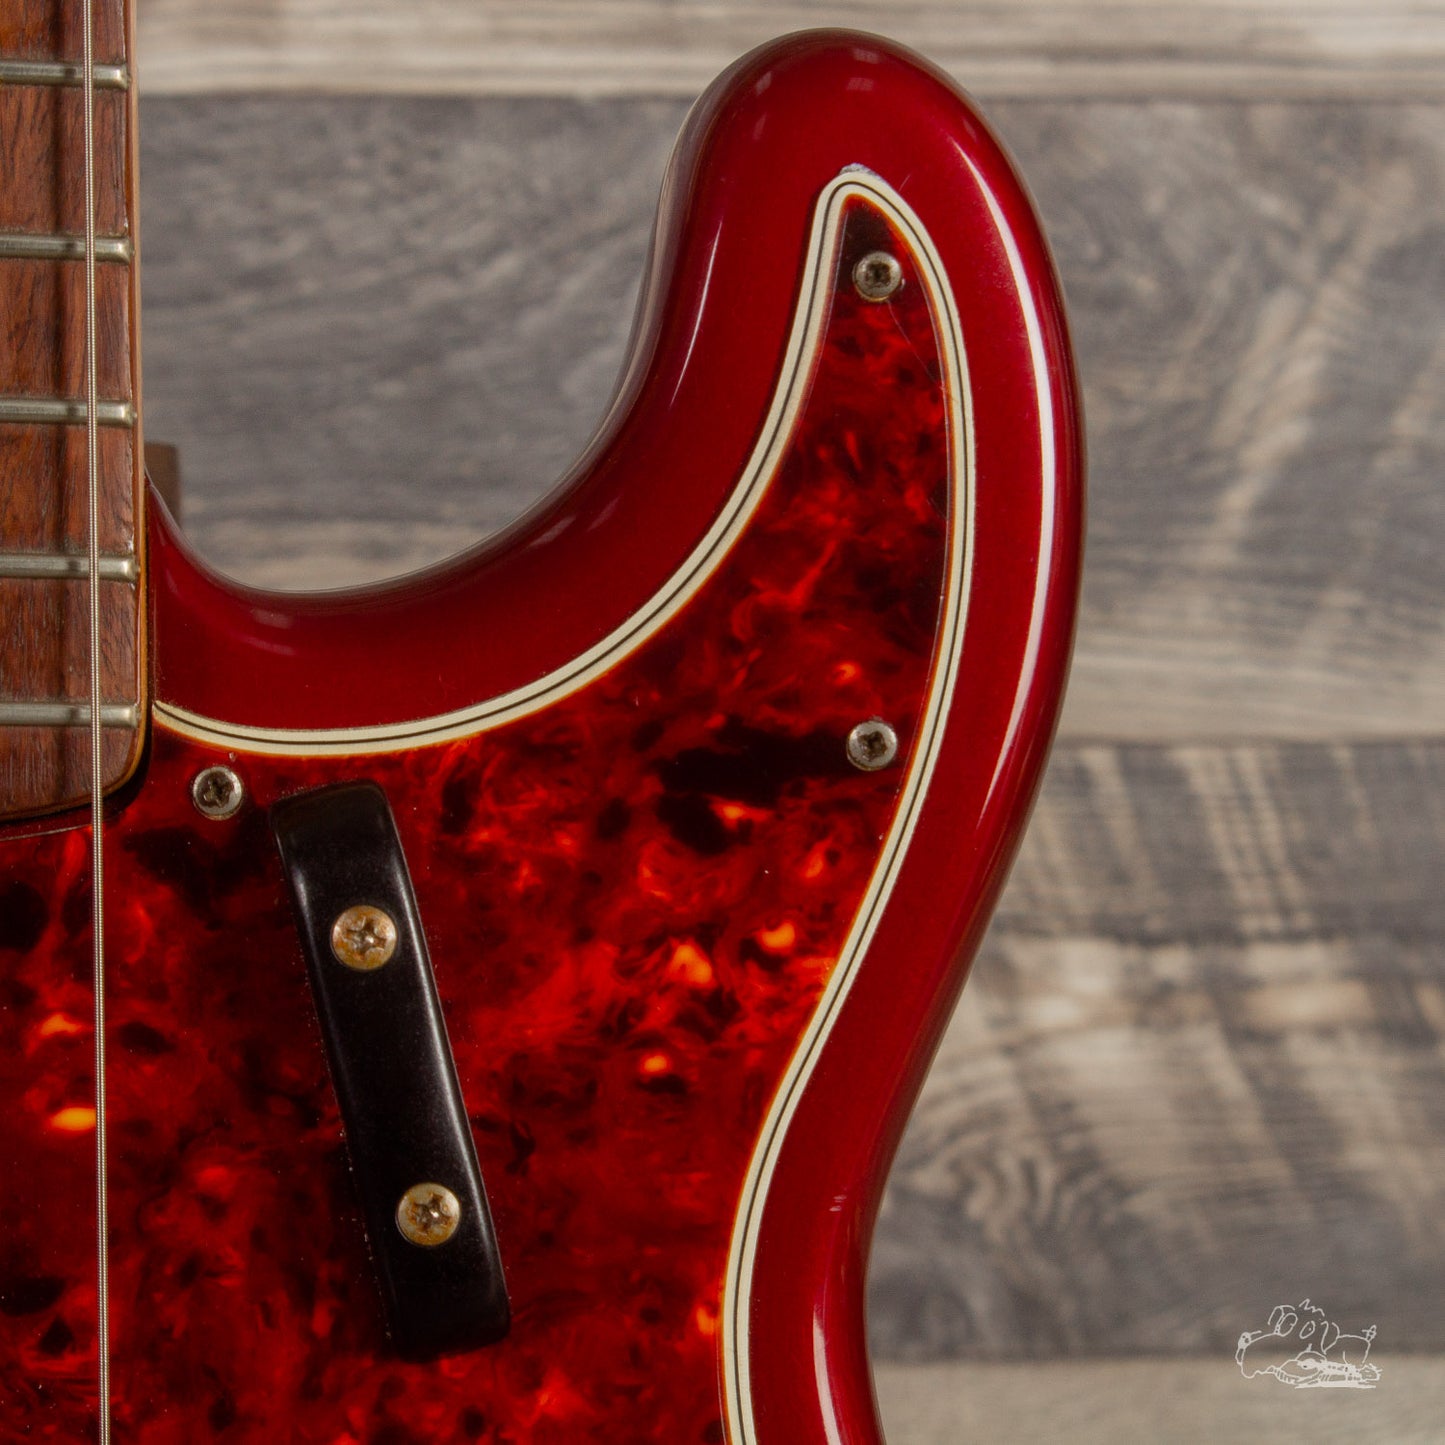 1963 Fender Precision Bass